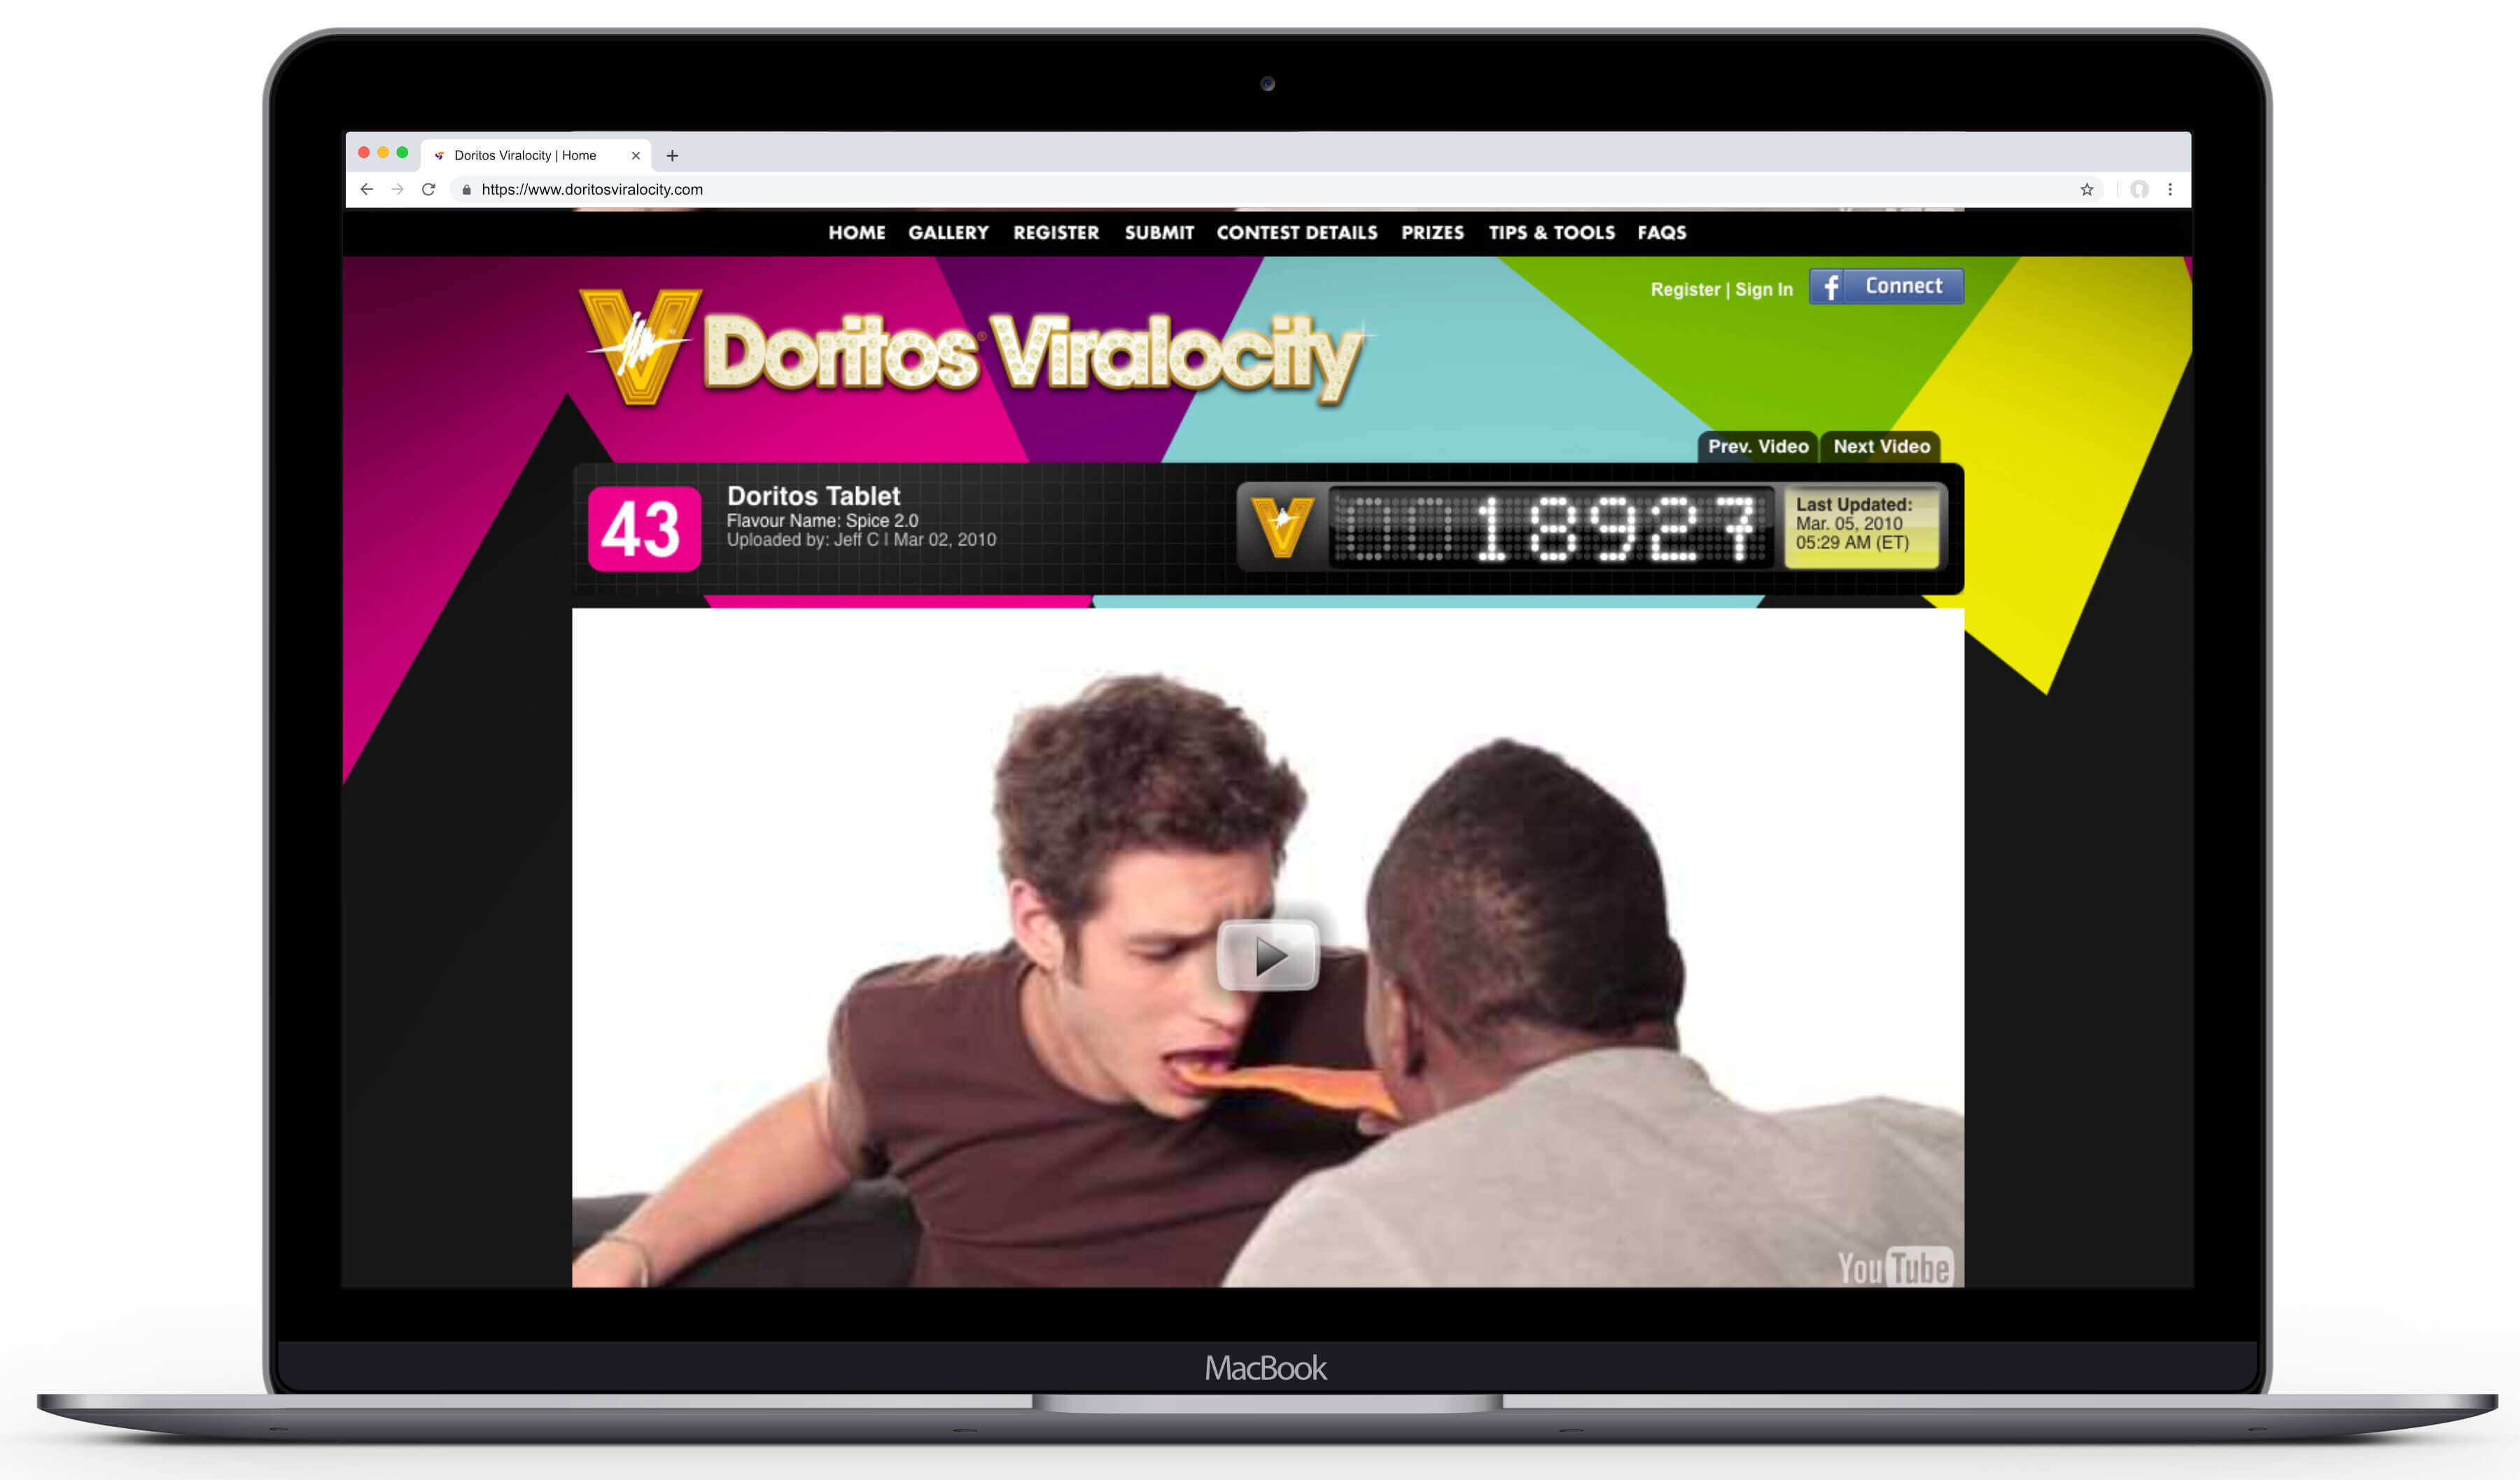 viralocity-screens-macbook-06-watch